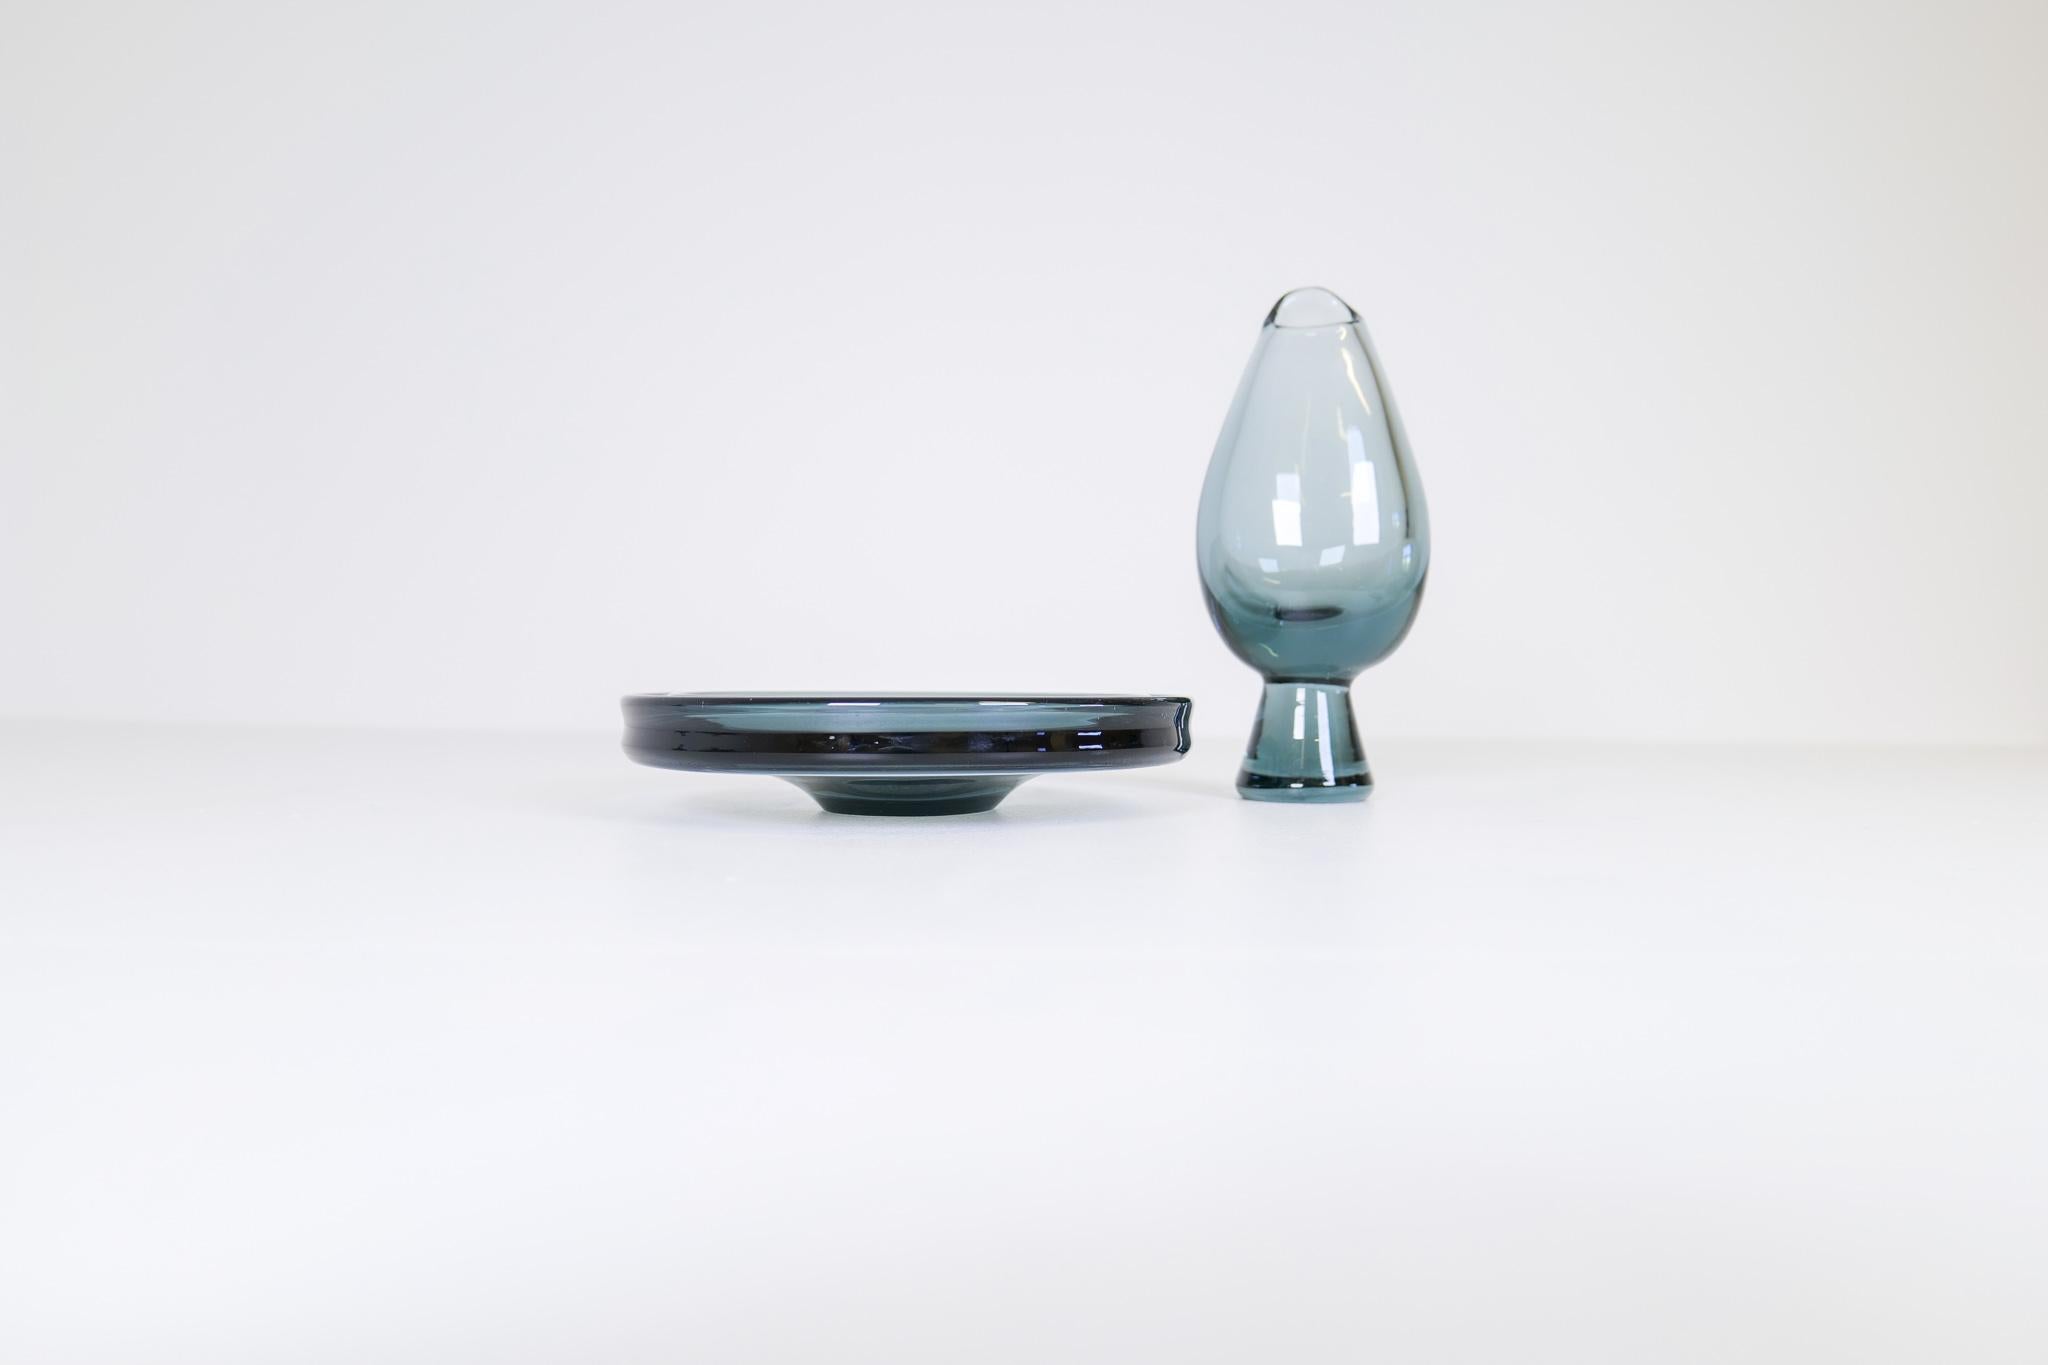 Diese beiden Gefäße, eine Vase und ein Glasteller, wurden von Vicke Lindstrand und Göran Wärff für Kosta Sweden entworfen. Sie haben schöne Linien, die perfekt mit seiner blau getönten Farbe funktioniert. 

Schöner Zustand mit einigen